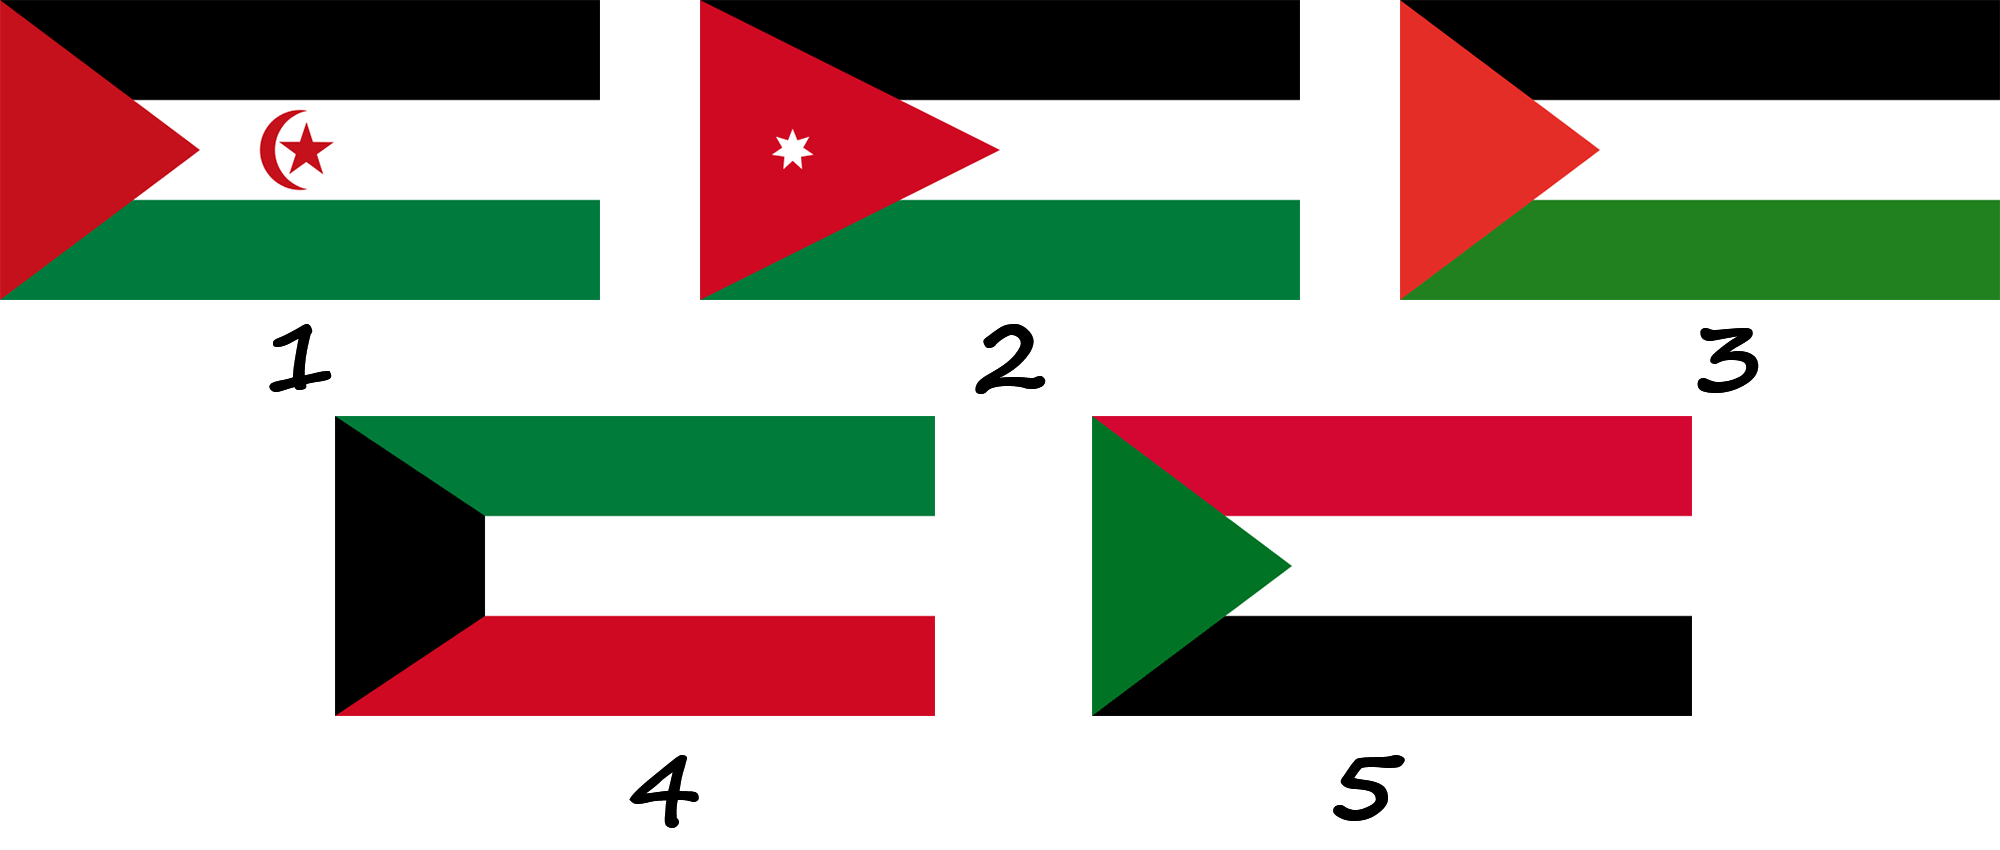 ¿A qué banderas se parece la bandera de los EAU?